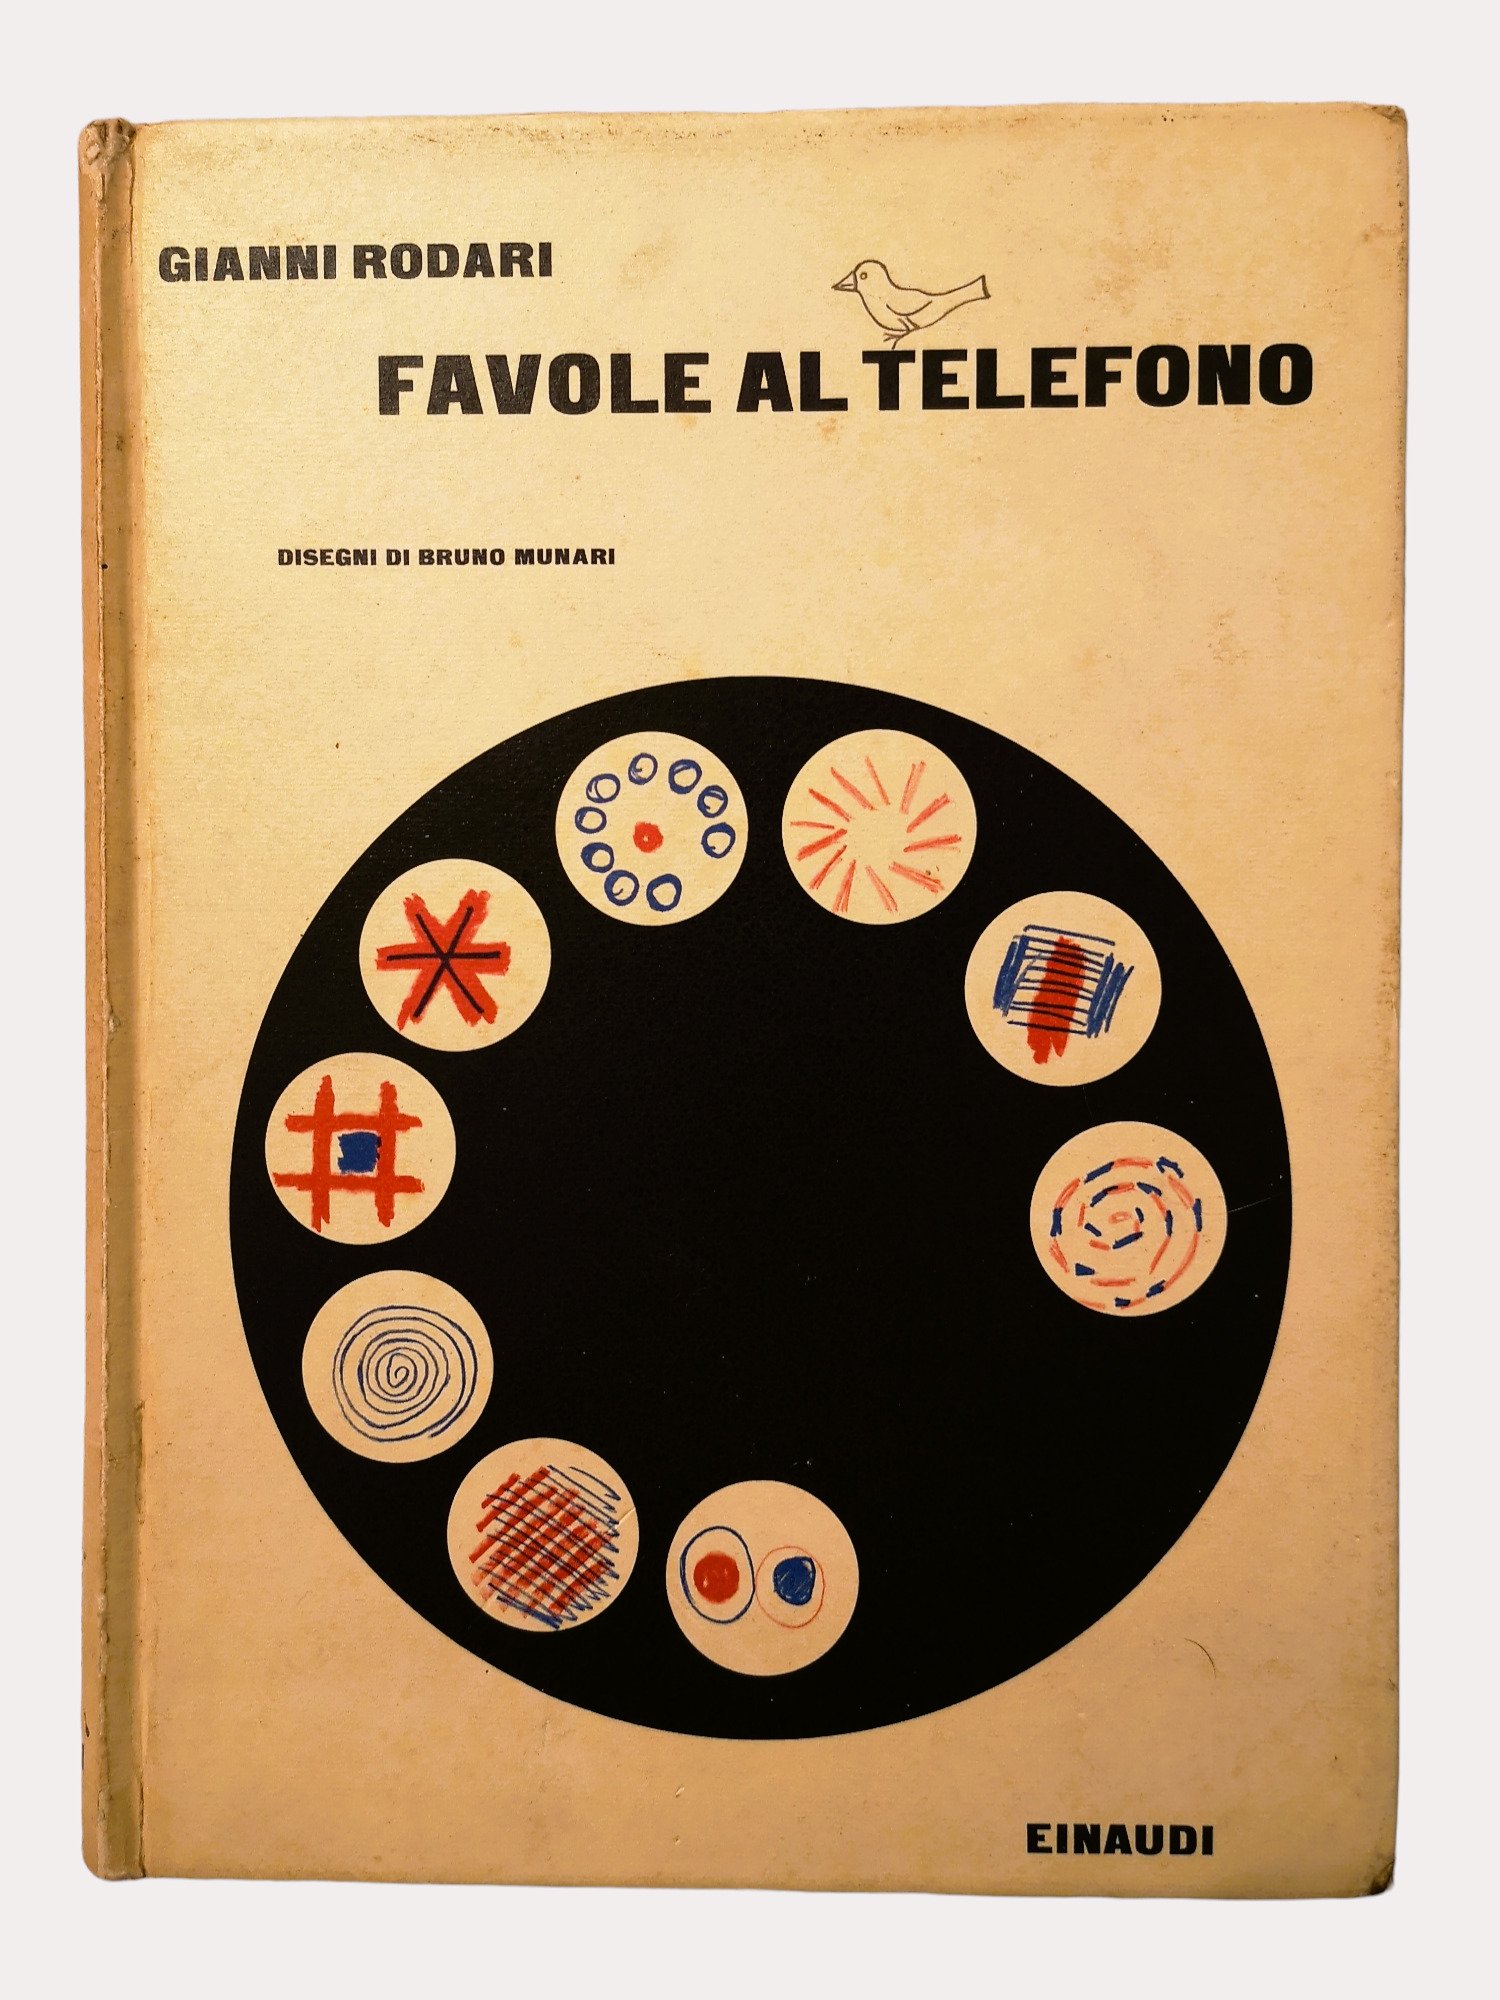 “Favole al telefono” di Gianni Rodari (Einaudi, 1962) con illustrazioni di Bruno Munari